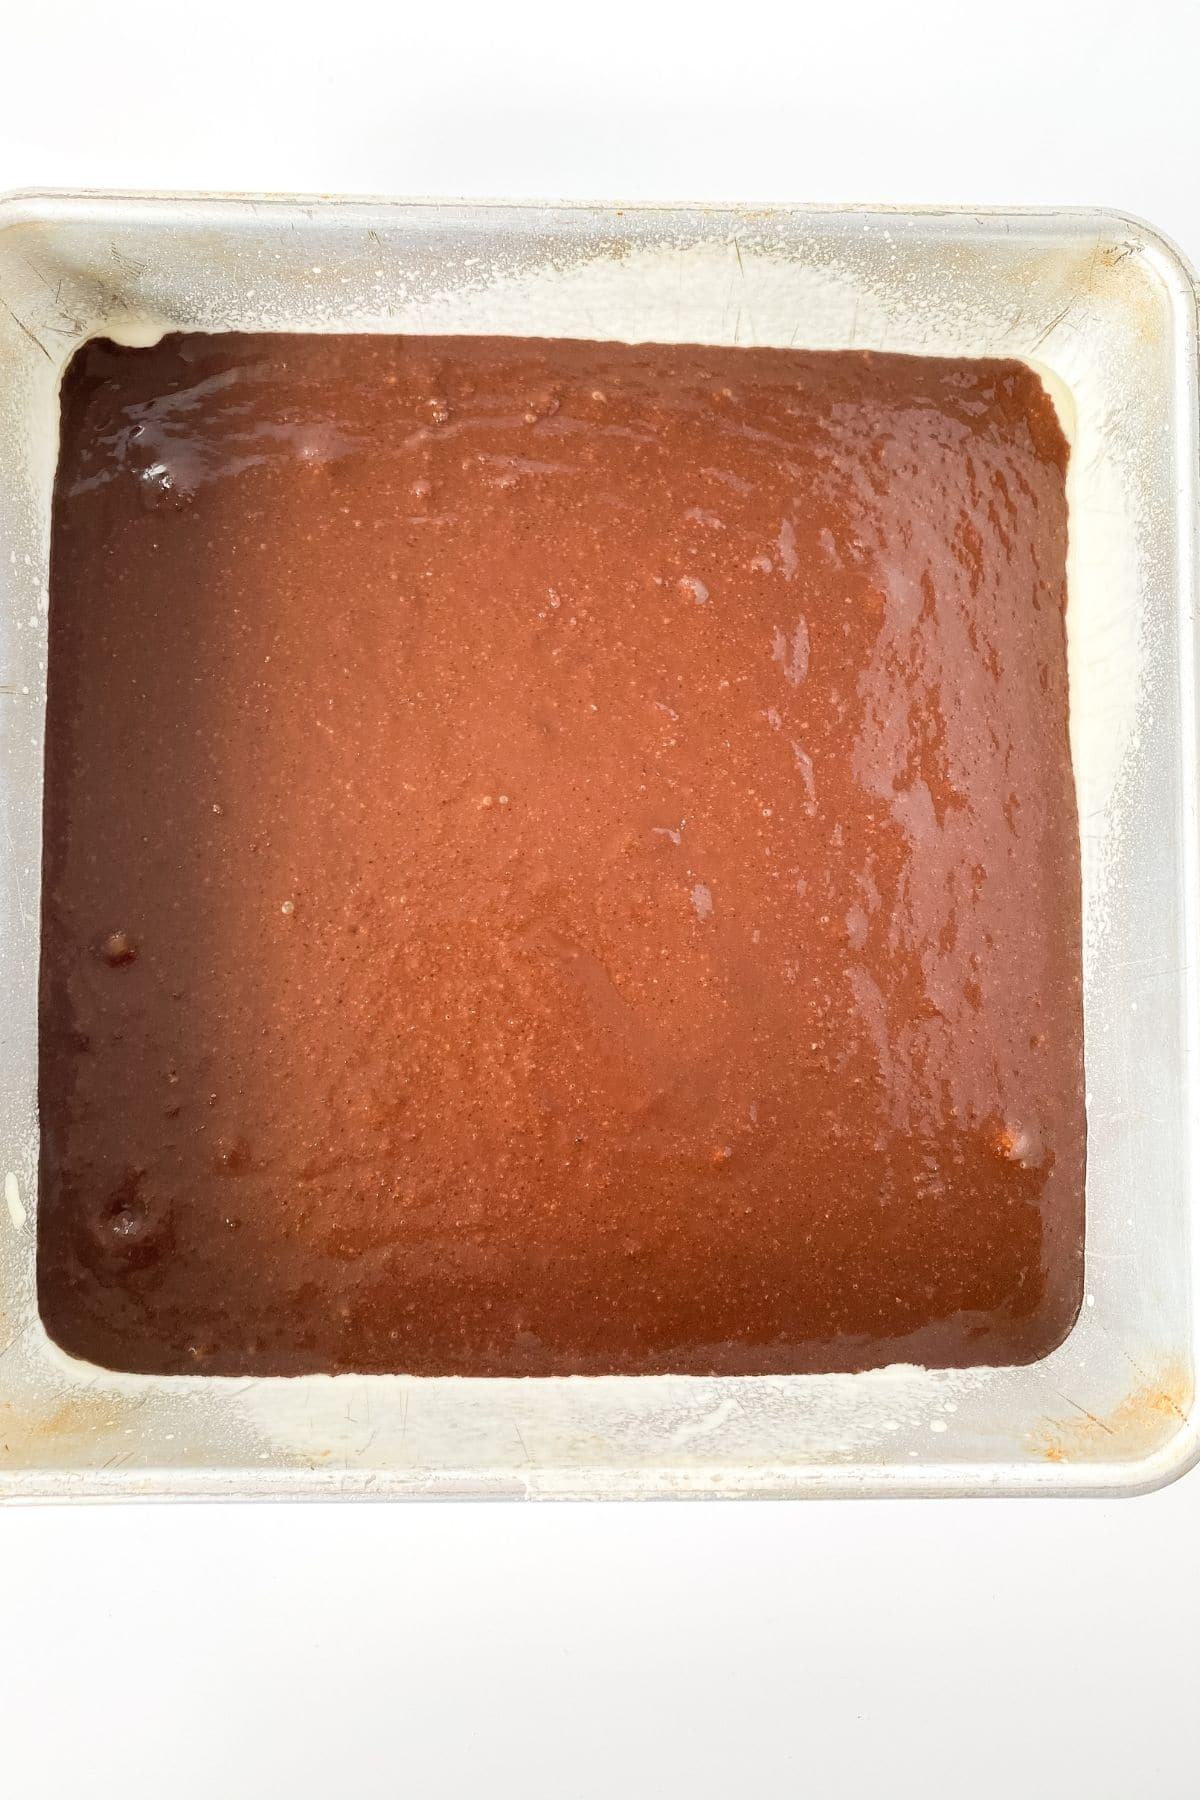 Keto brownies in pan before baking